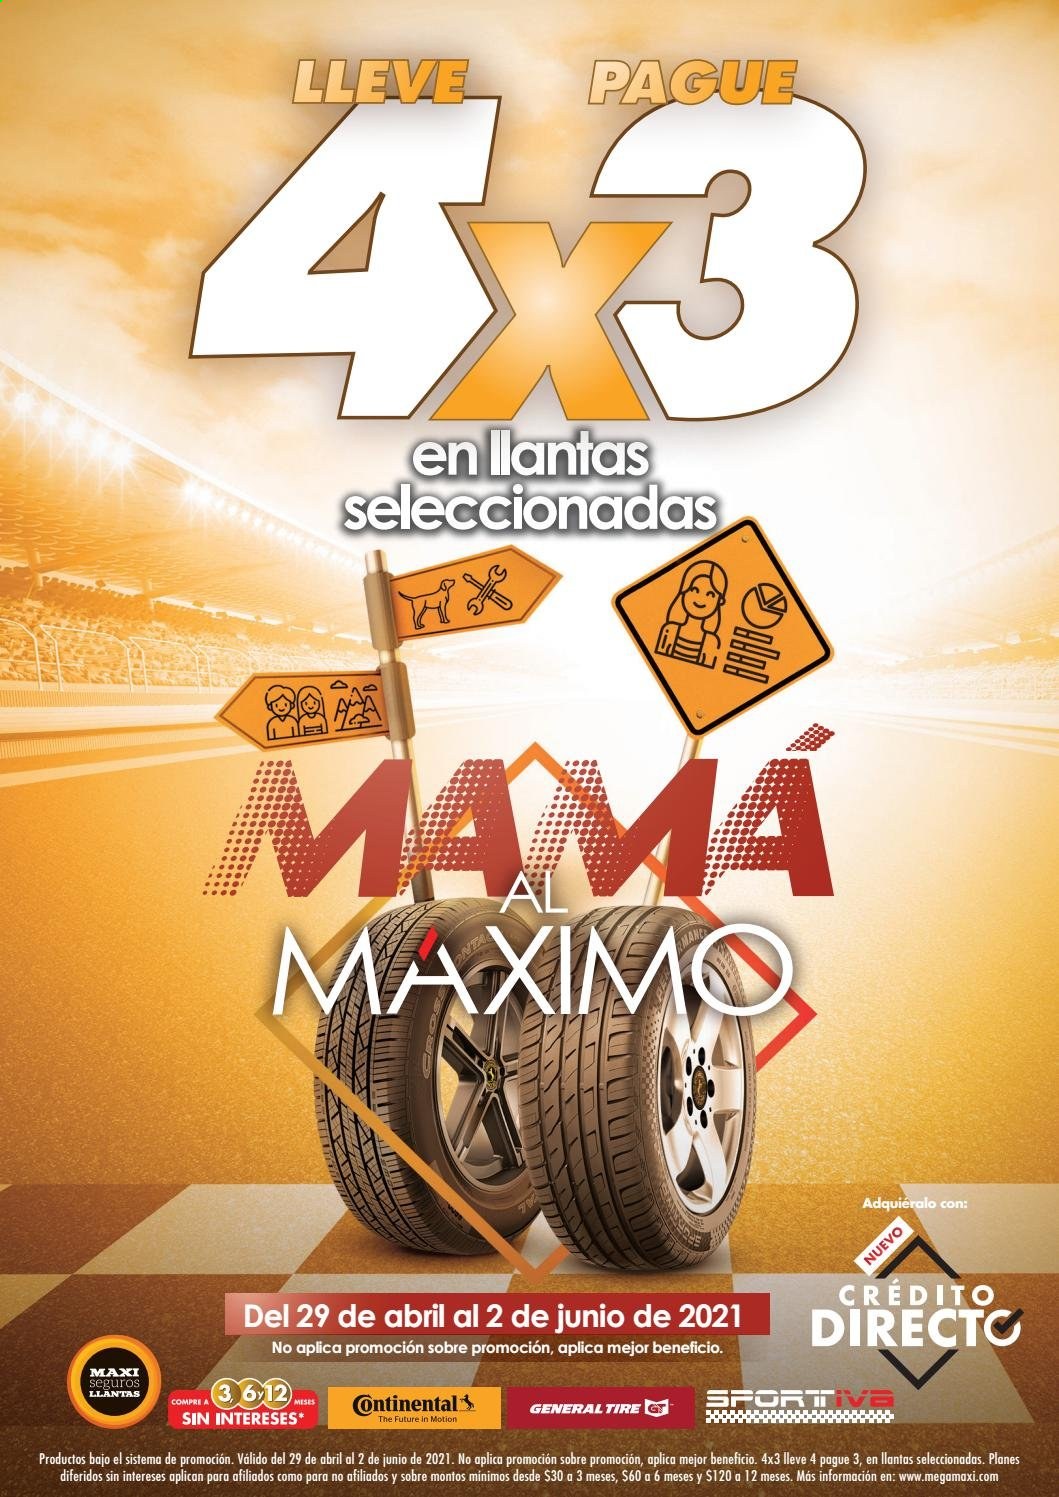 Catálogo Megamaxi - 29.4.2021 - 2.6.2021.